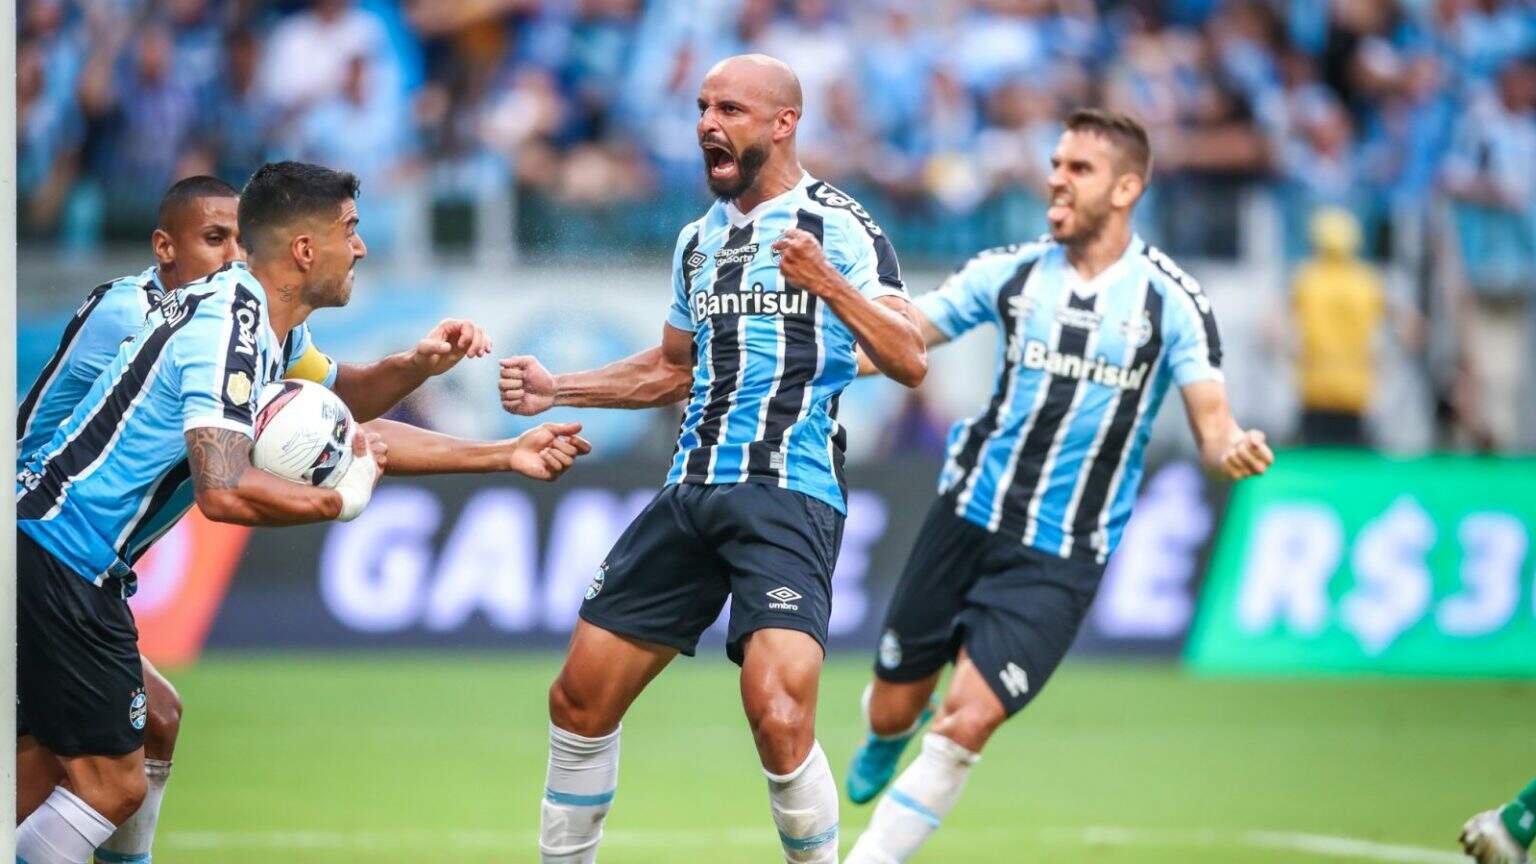 Zebra passeia, Caxias bate Inter nos pênaltis e faz final contra o Grêmio -  26/03/2023 - UOL Esporte